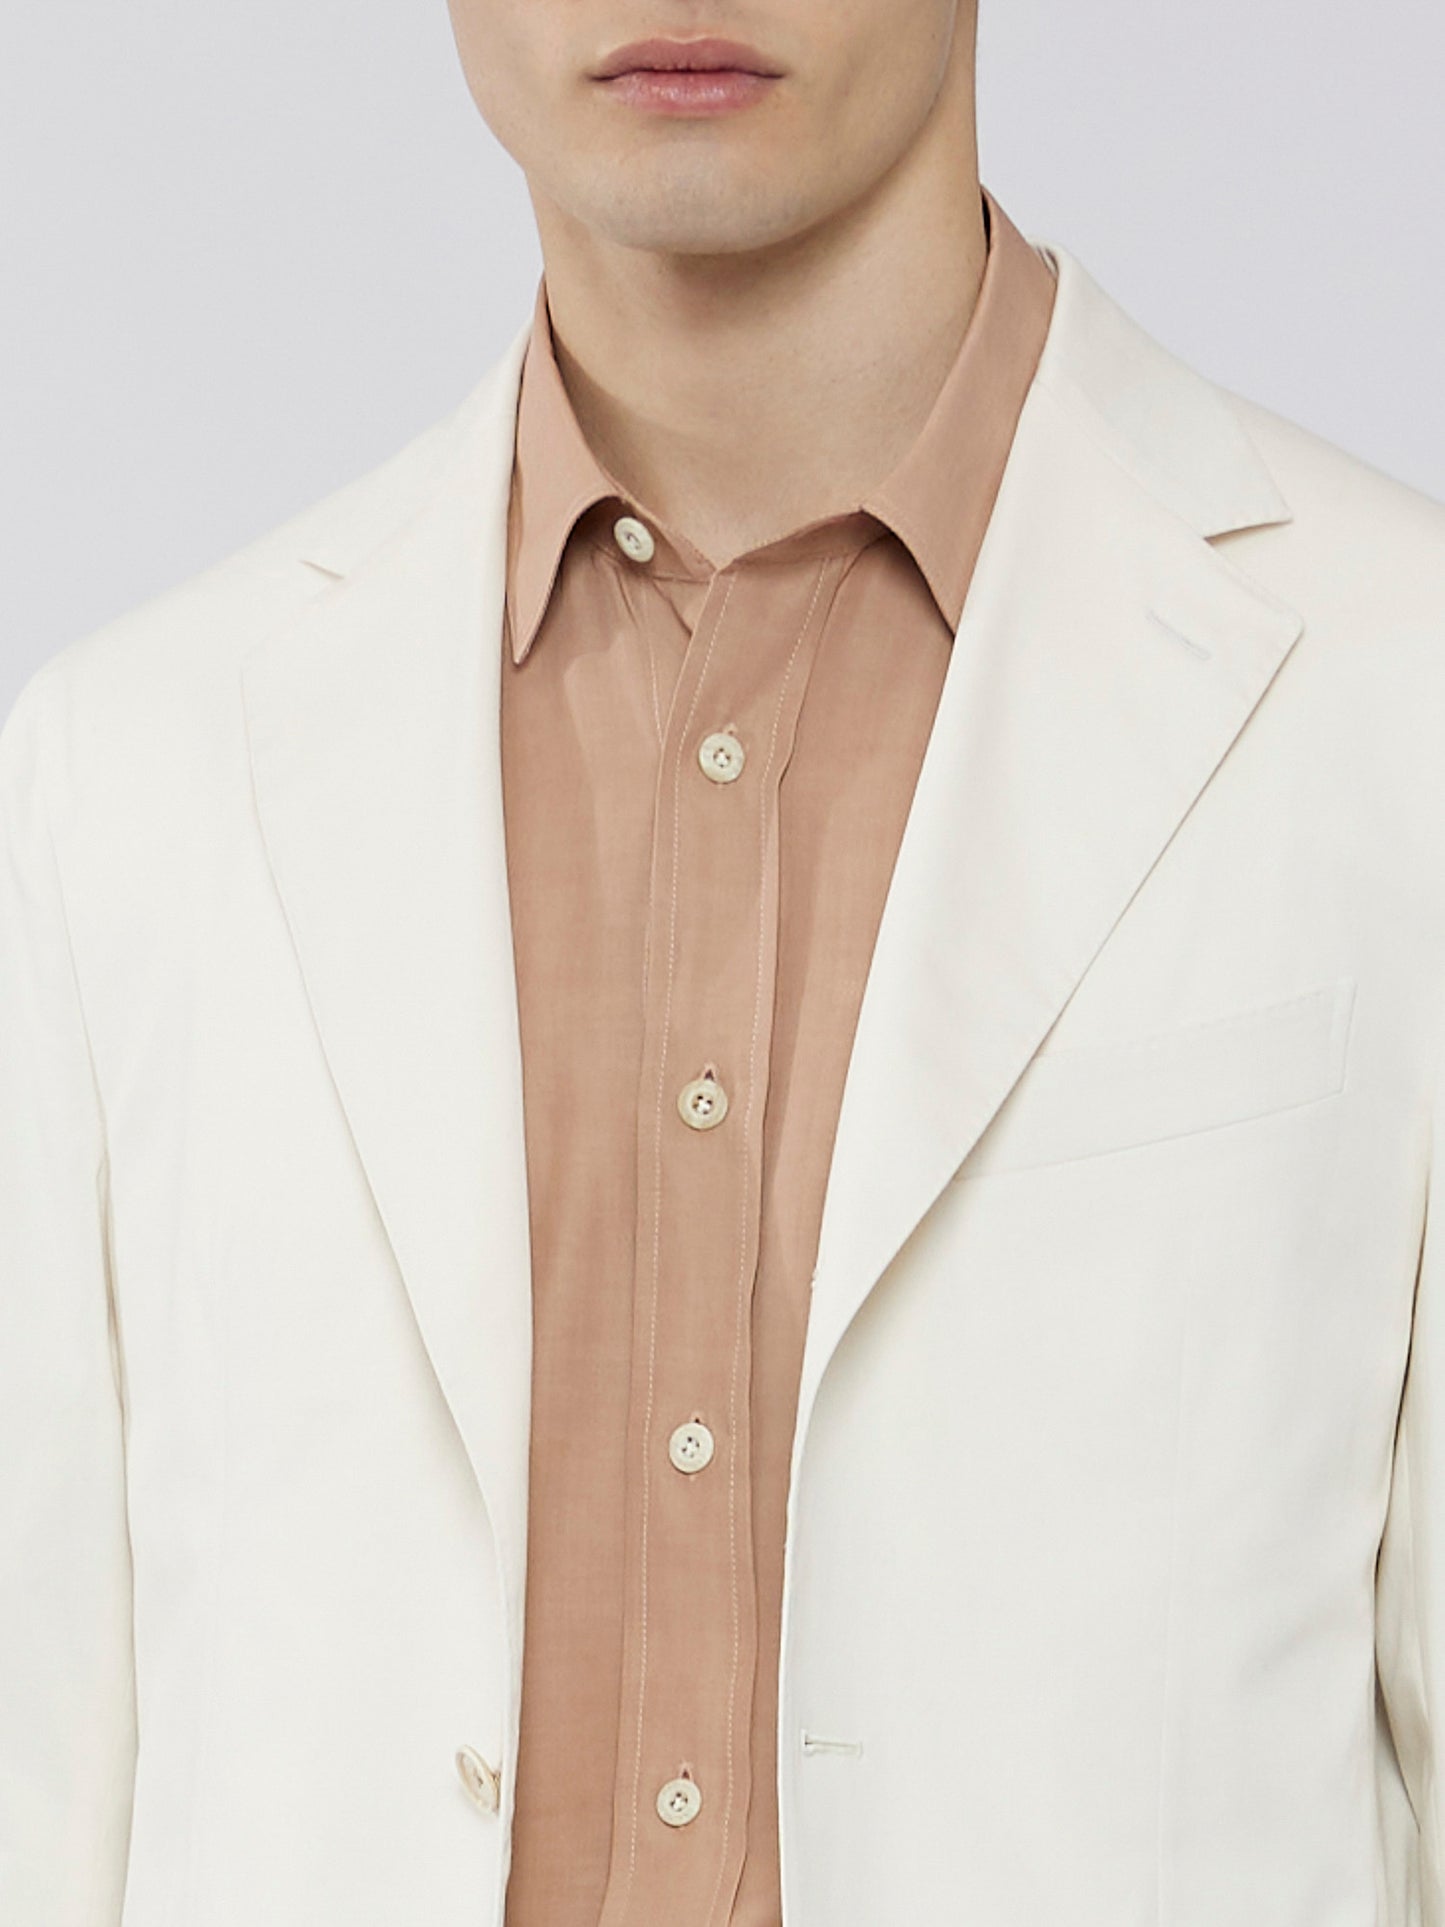 Caruso Menswear Abbigliamento Uomo Abito Aida in cotone-elastane bianco drop 8R dettaglio giacca